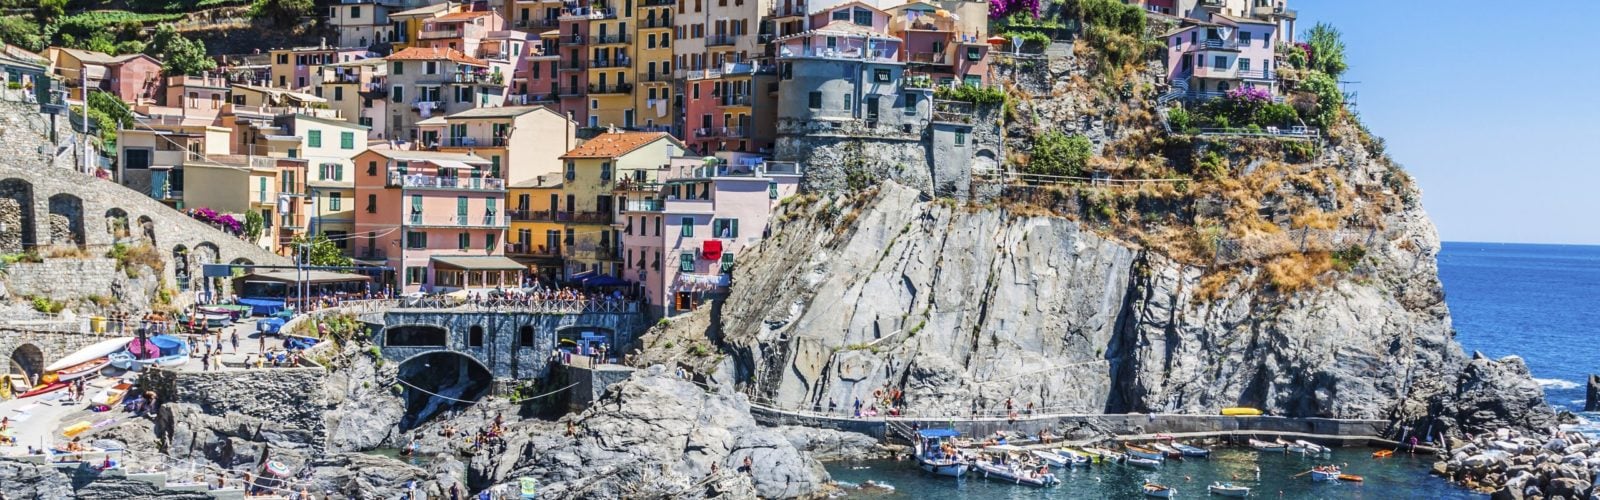 Colourful Italian coastal town